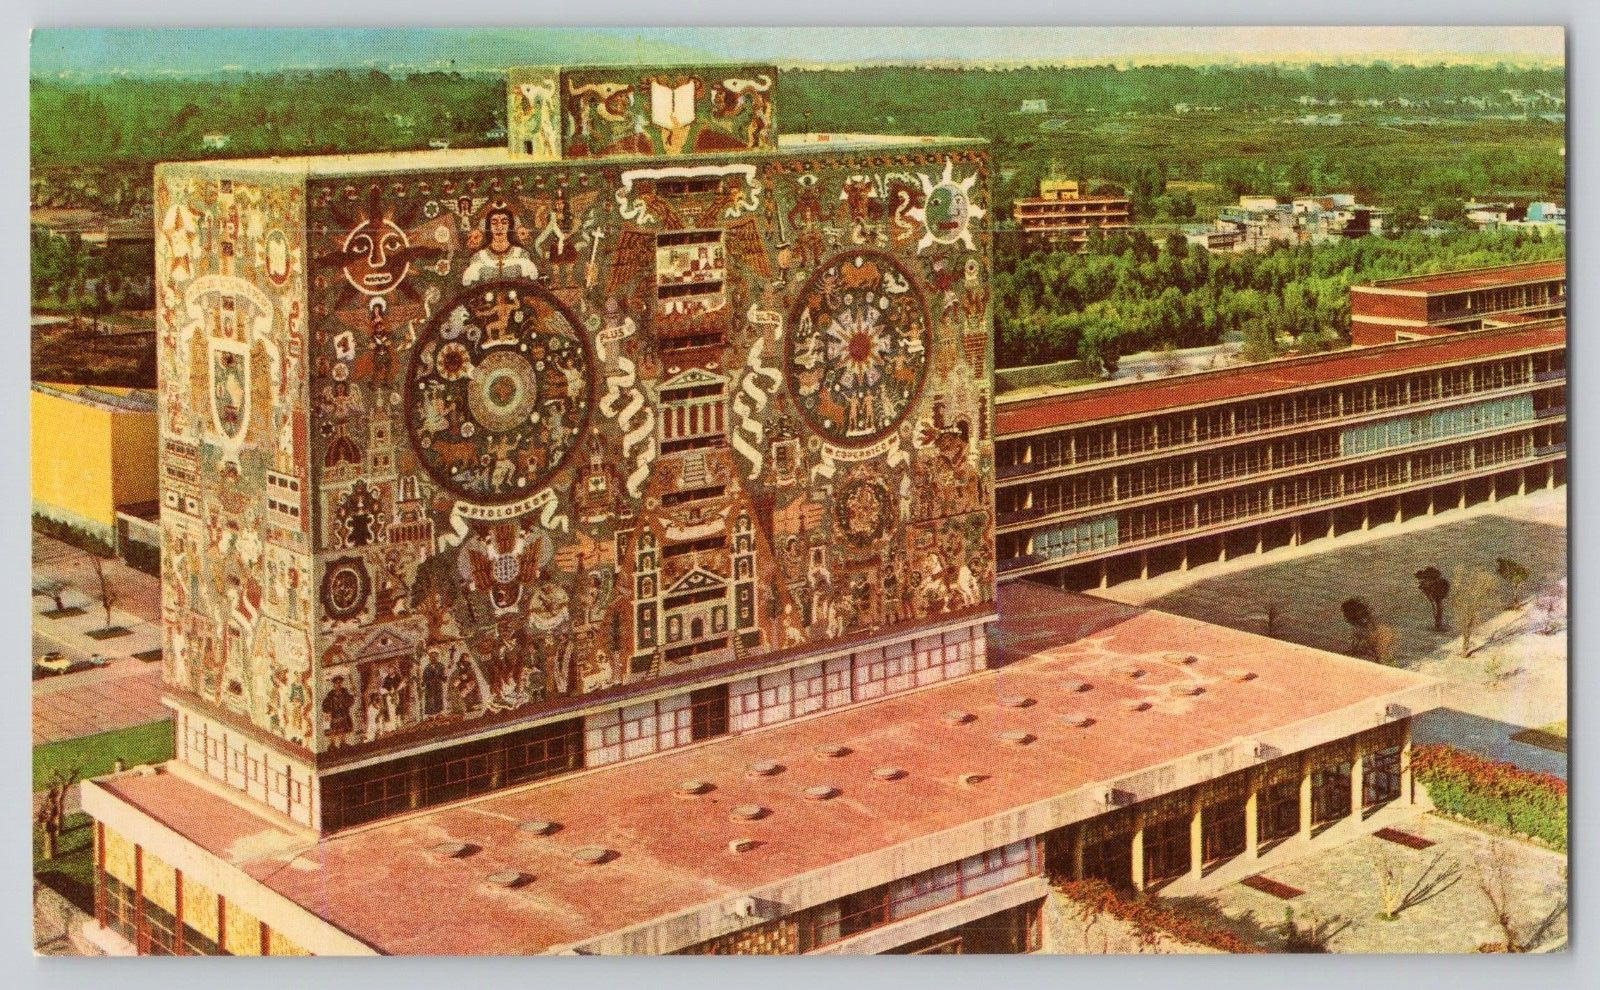 Postcard Library De La Ciudad University, Mexico